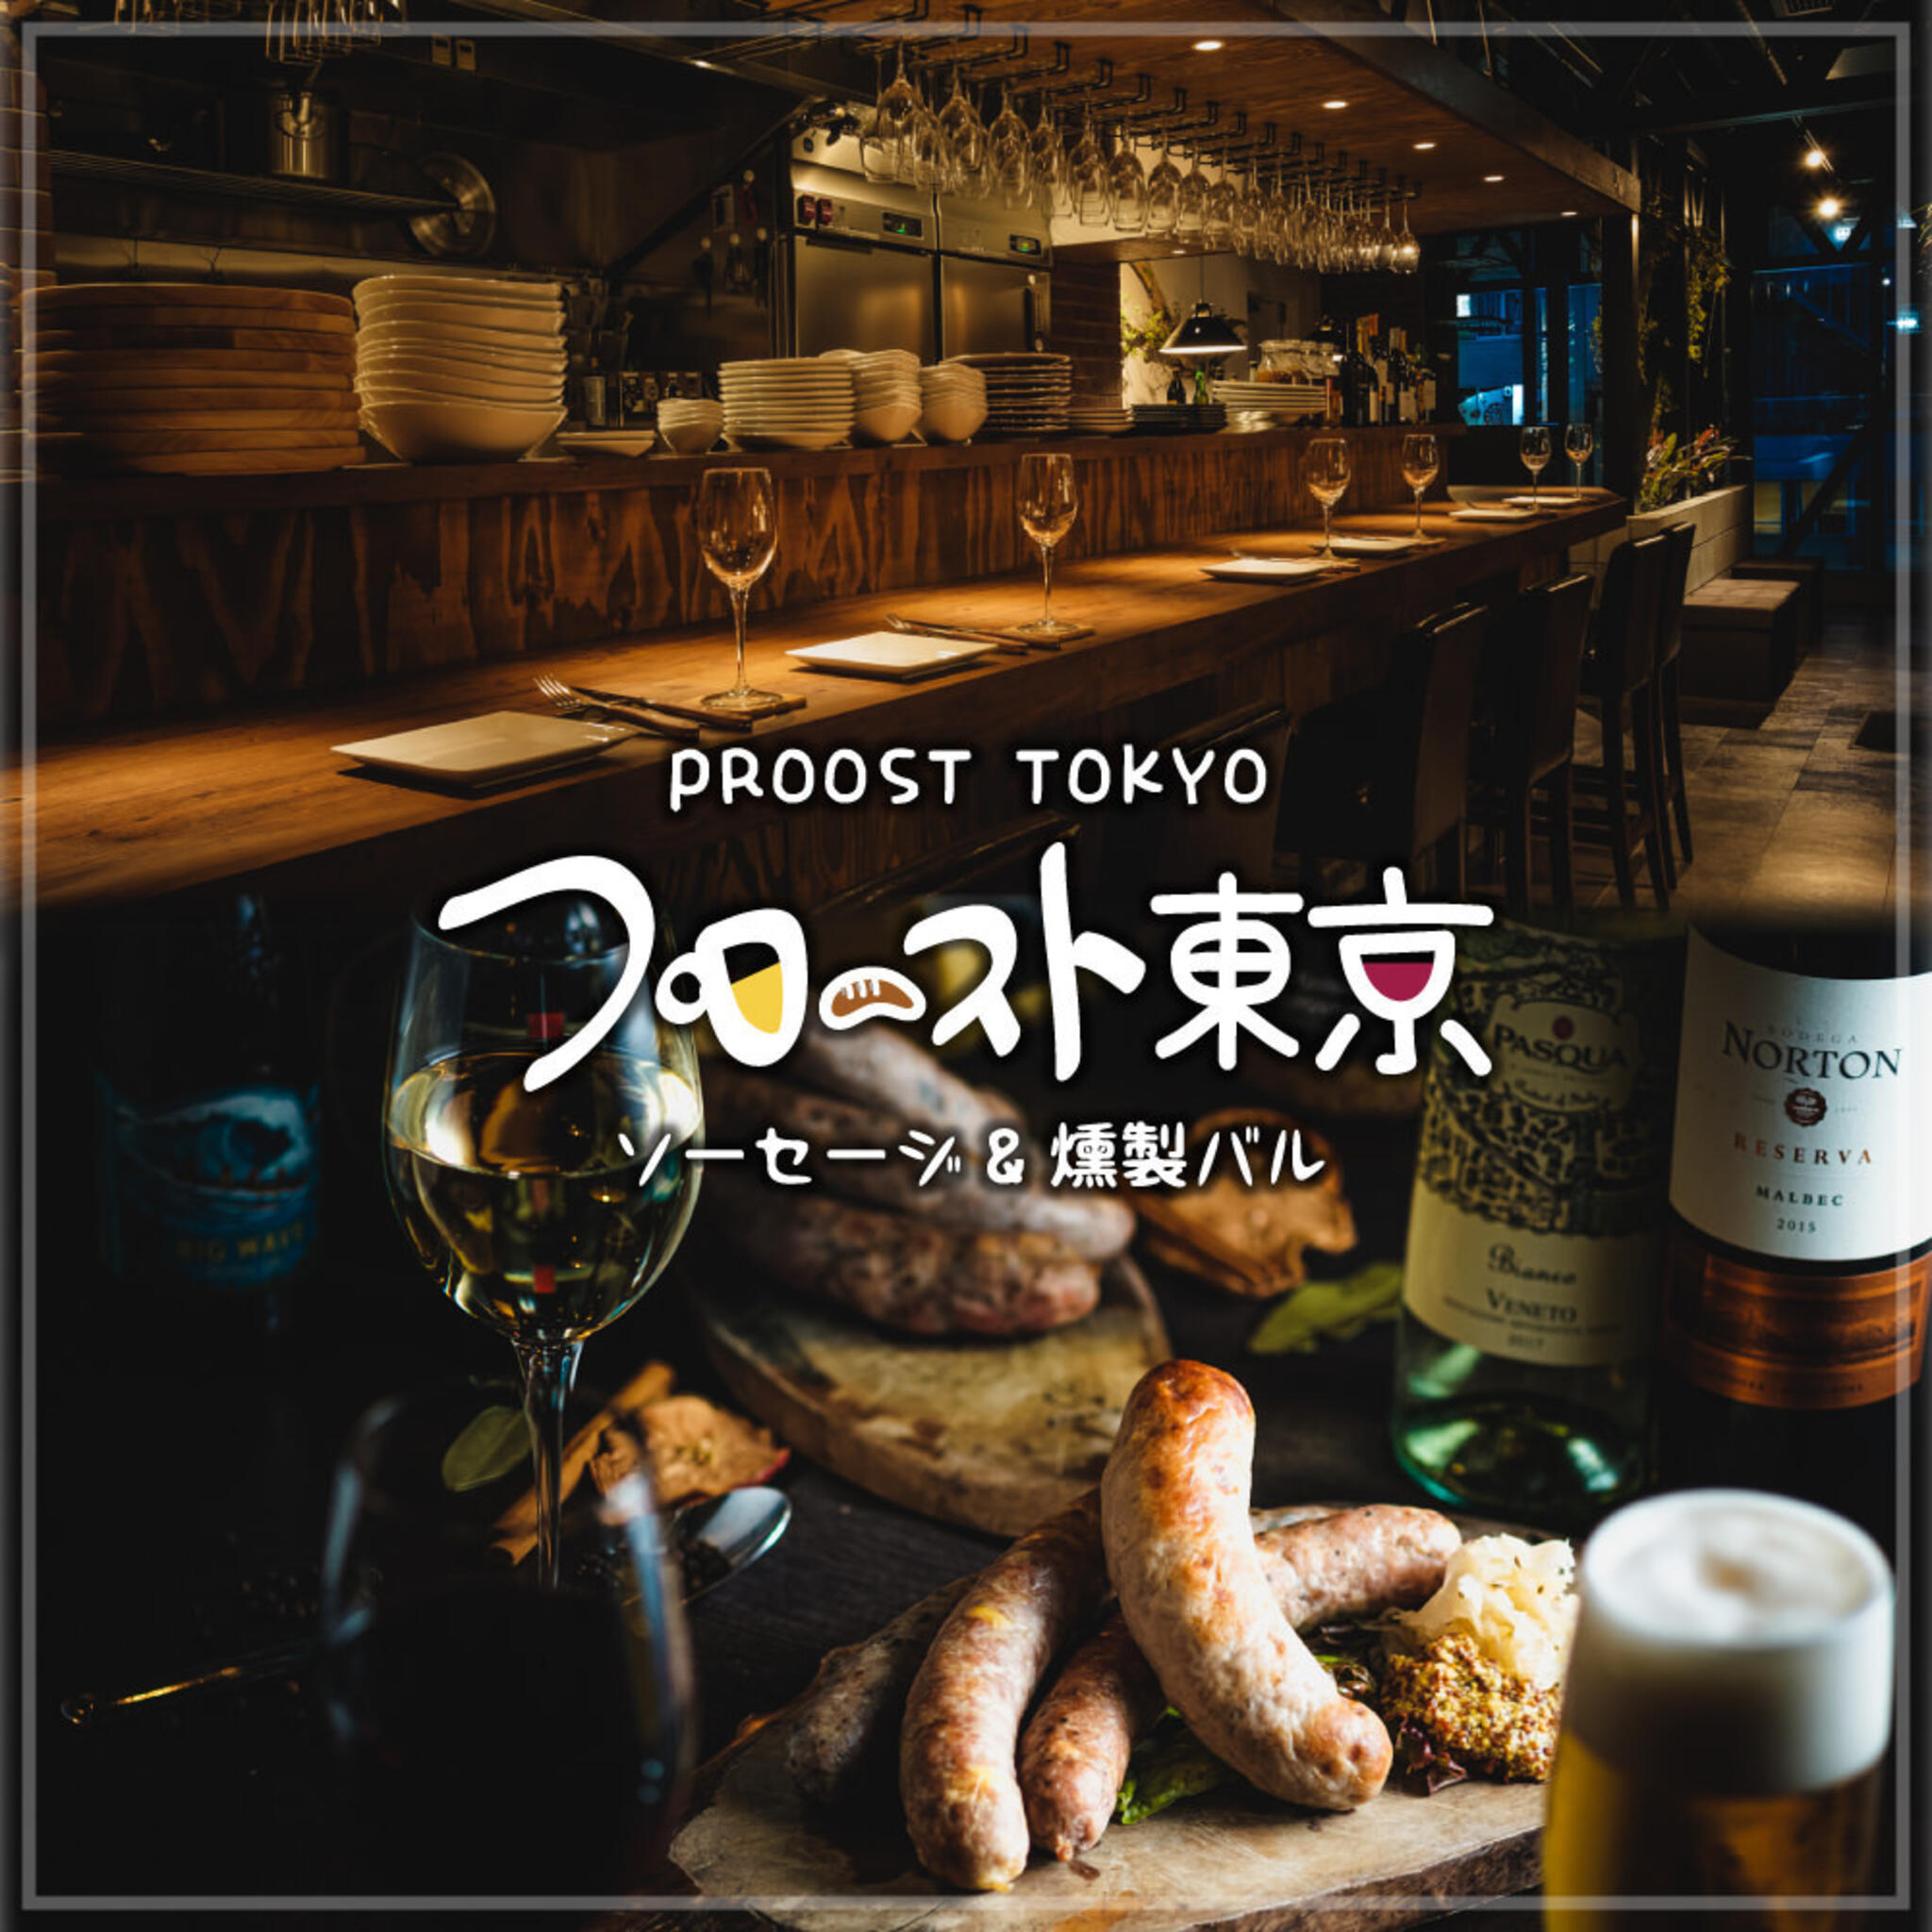 プロースト東京~ソーセージ&燻製バル~上野店の代表写真1